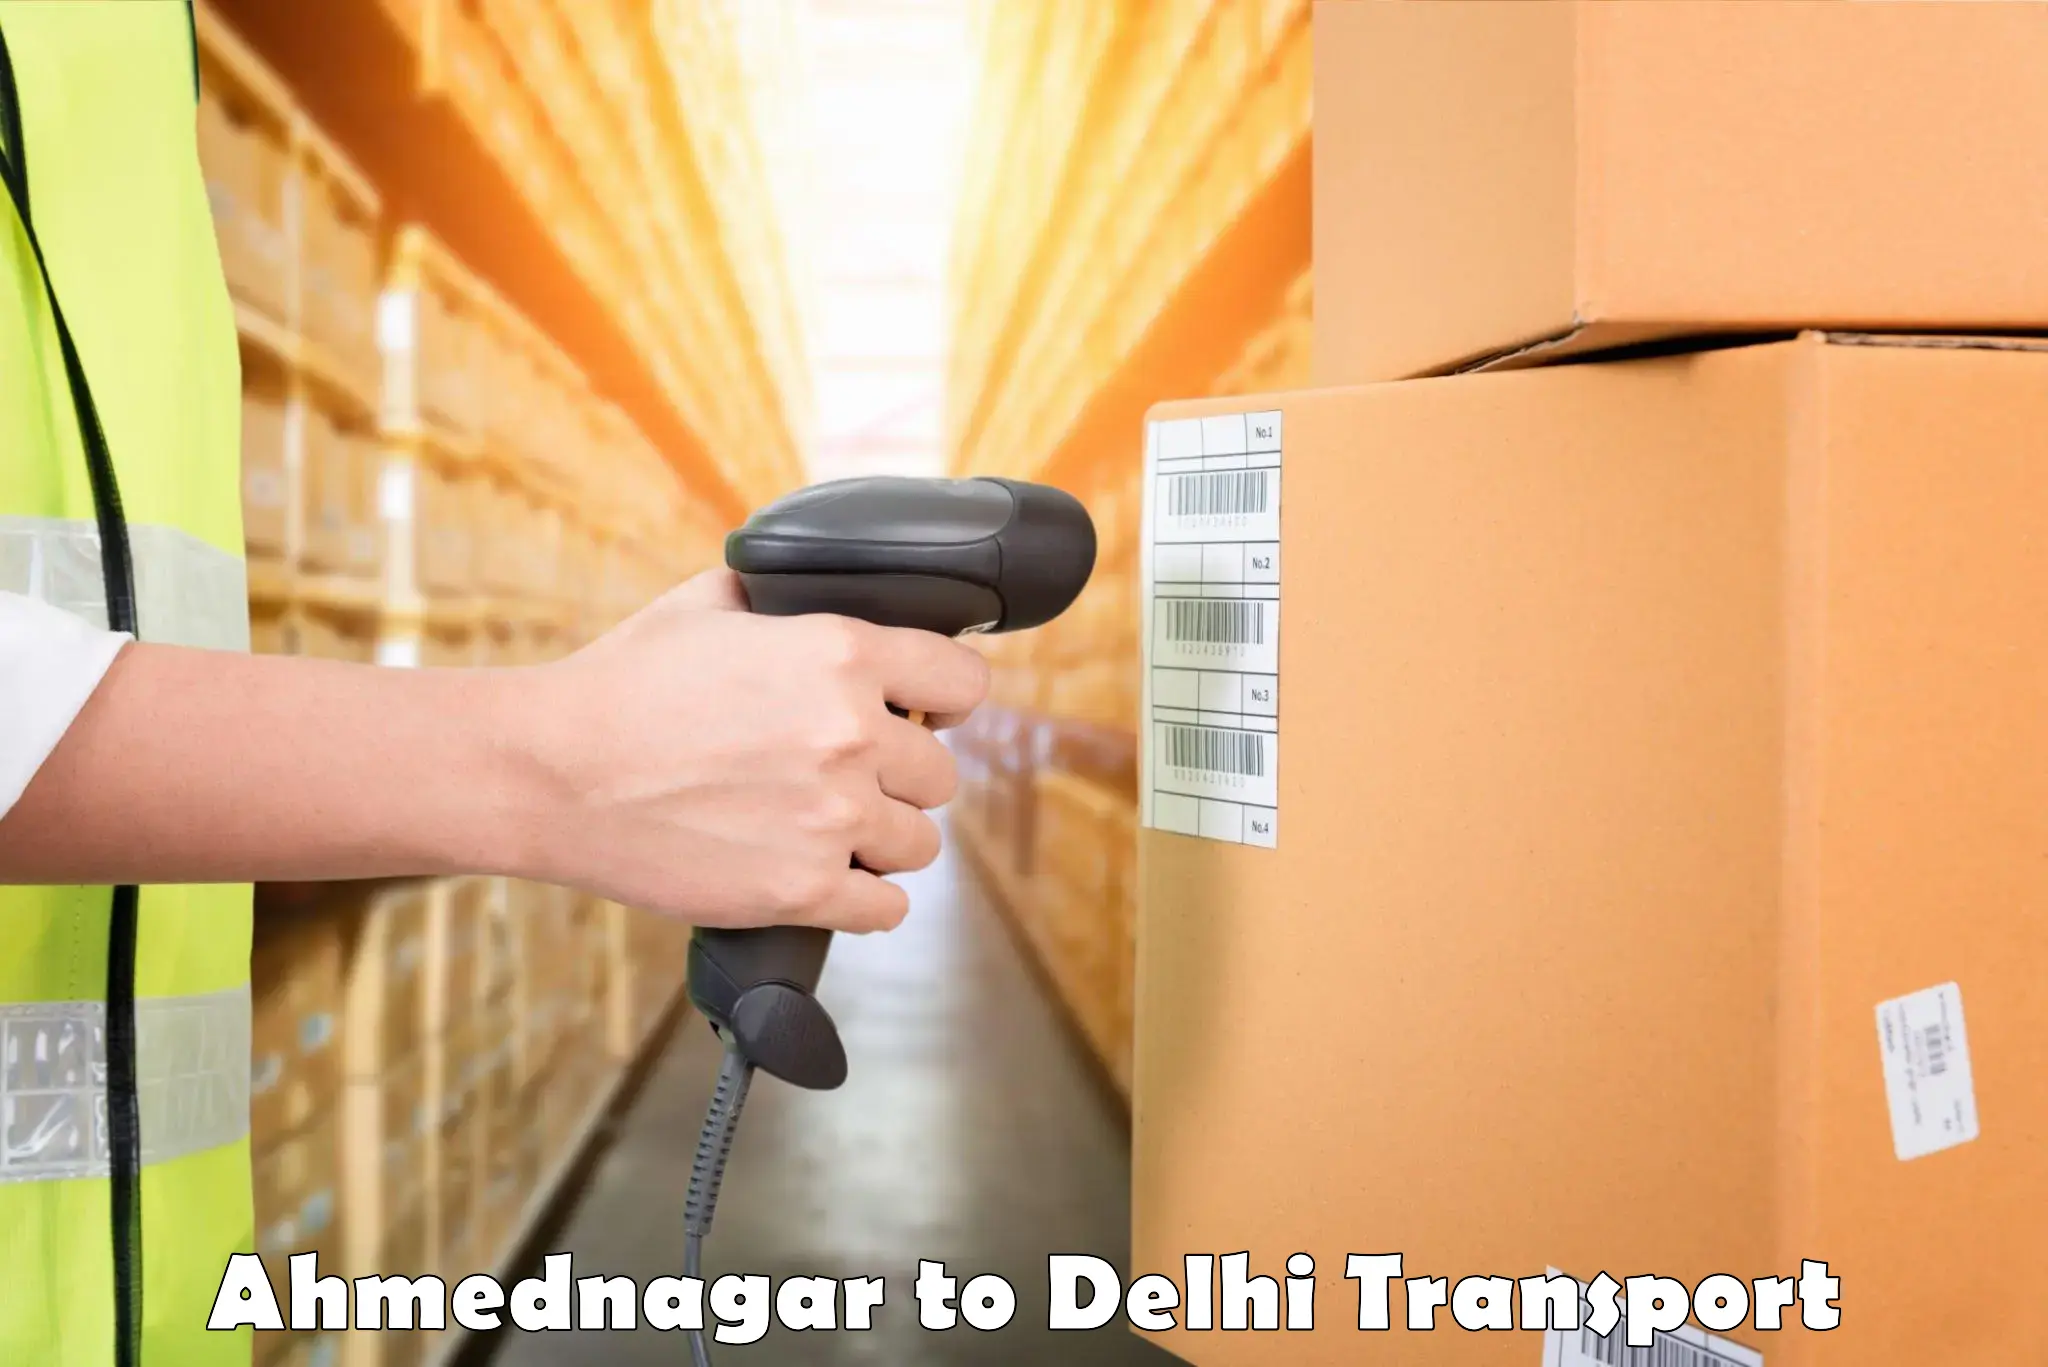 Cargo transportation services Ahmednagar to NCR